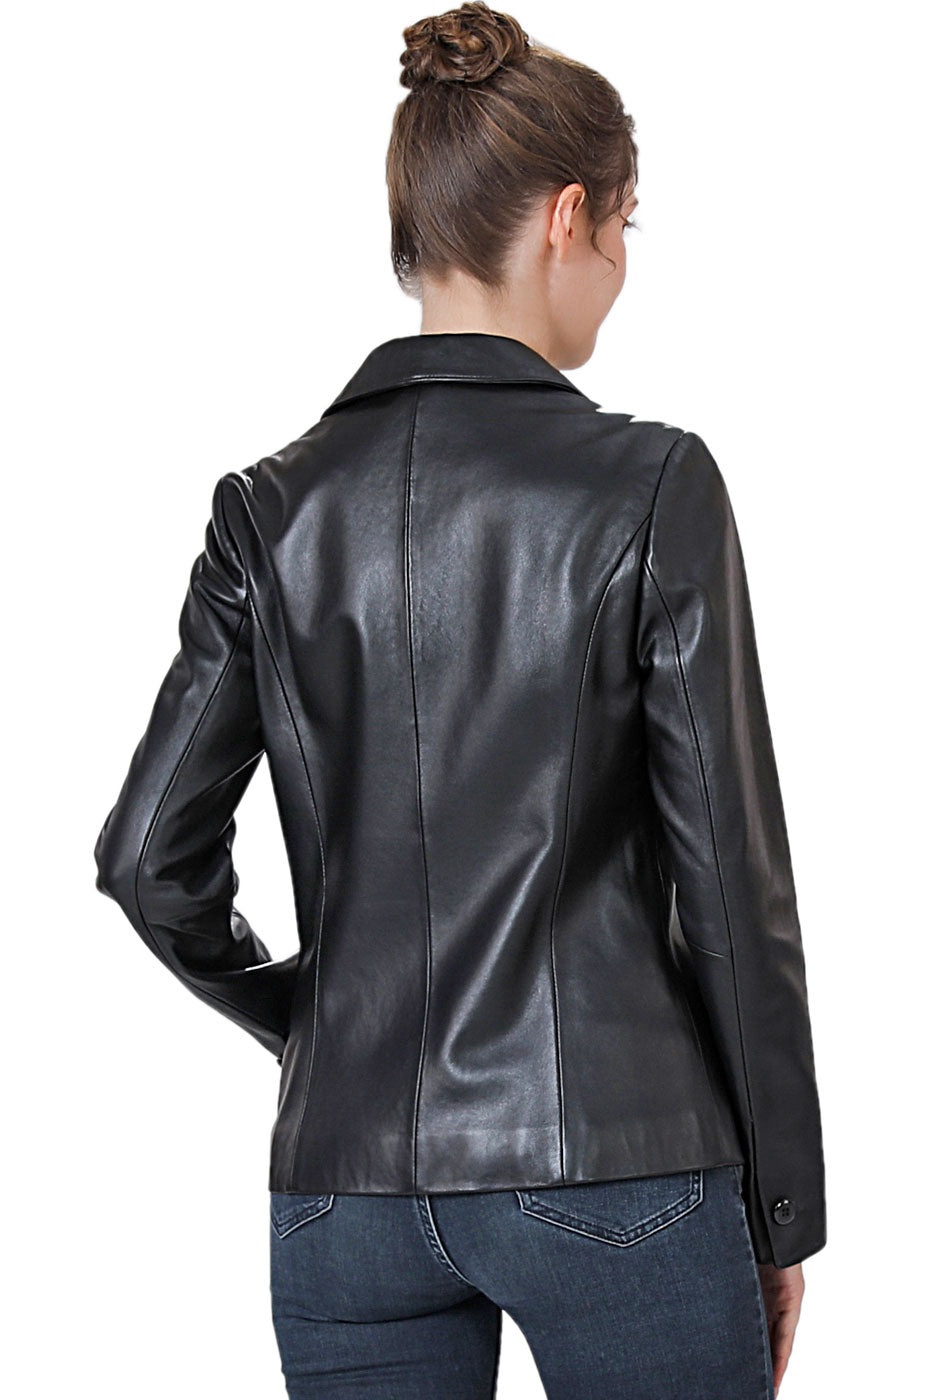 BGSD Women Lucy Lambskin Leather Jacket